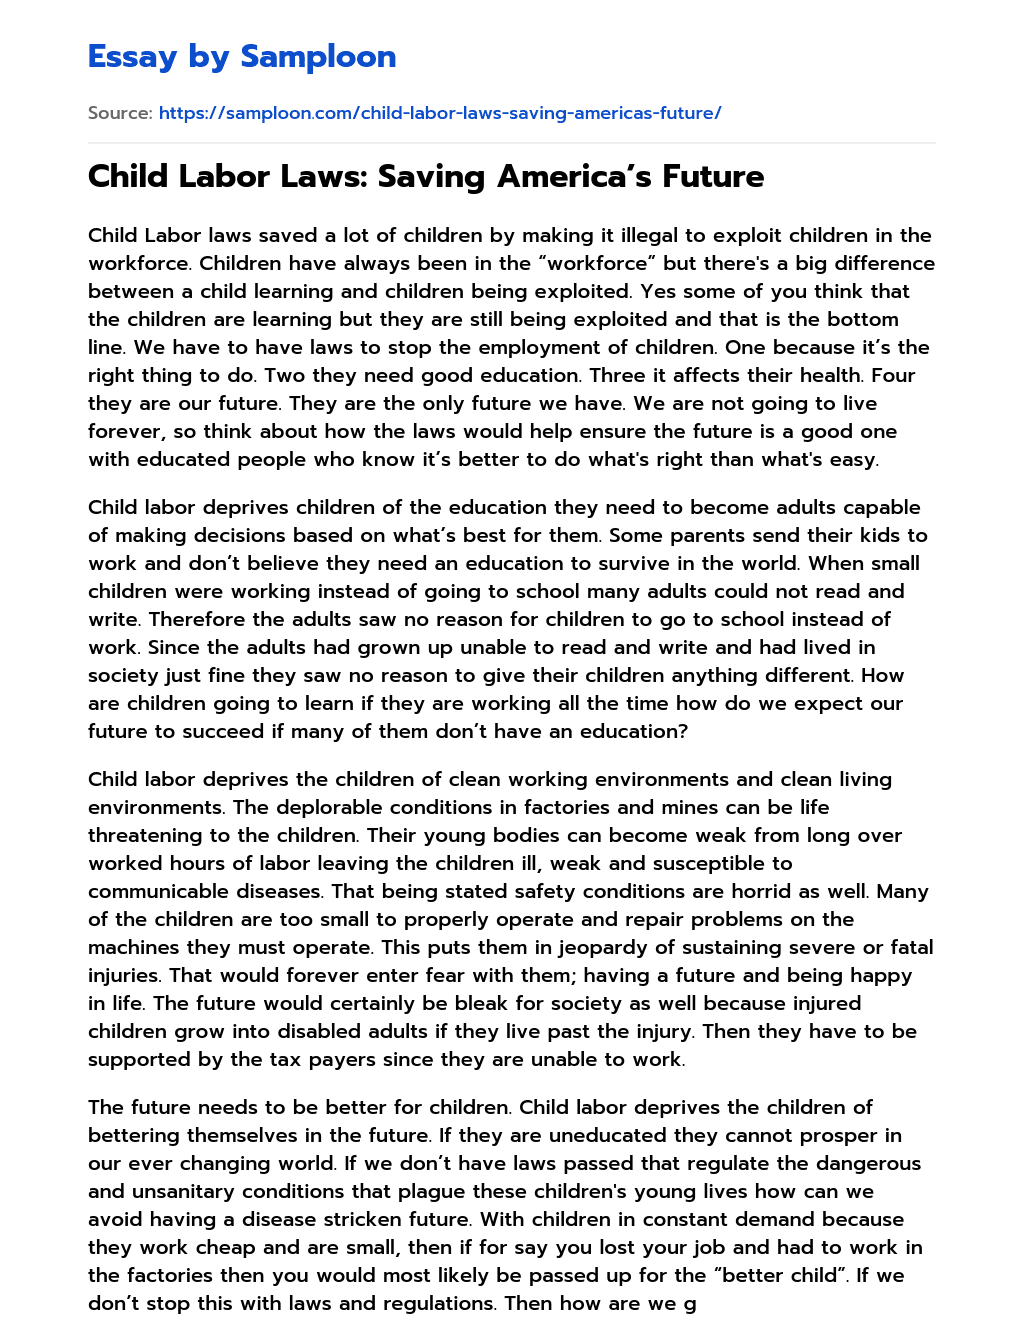 Child Labor Laws: Saving America’s Future essay